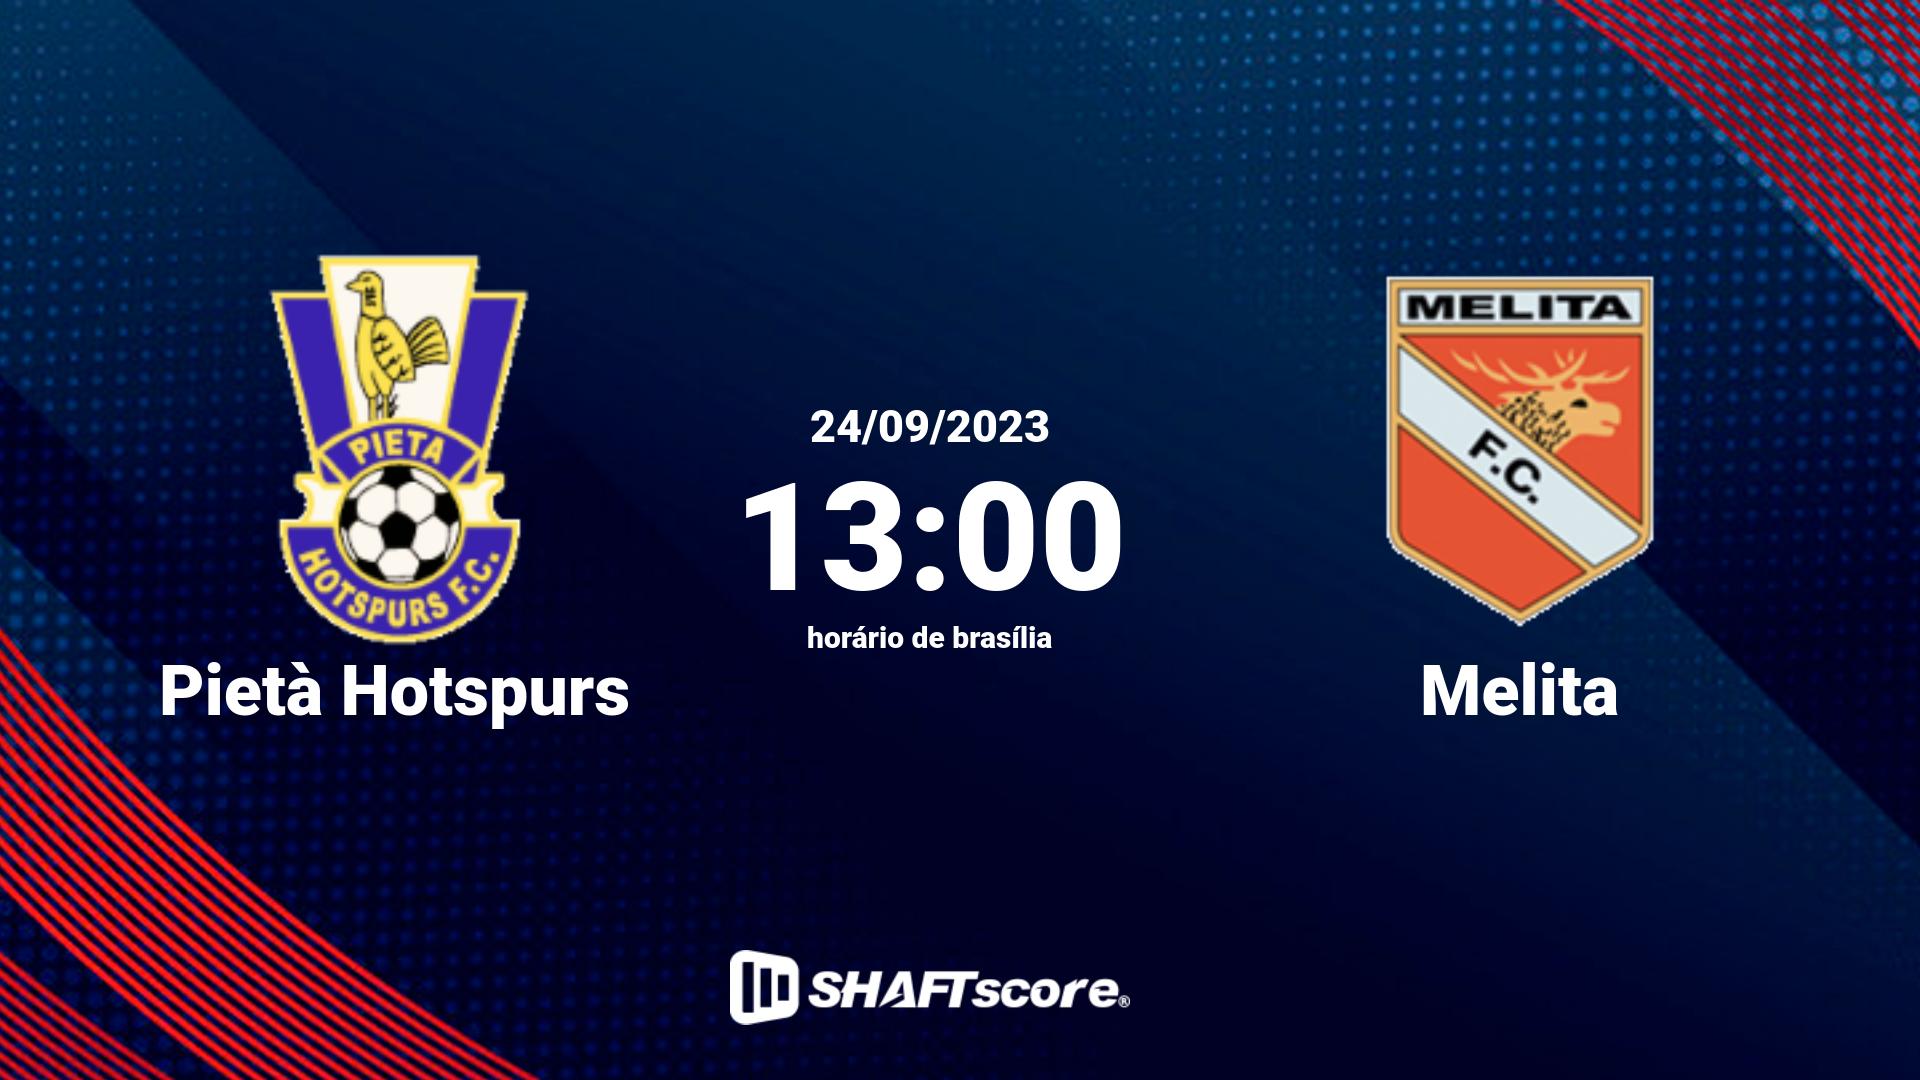 Estatísticas do jogo Pietà Hotspurs vs Melita 24.09 13:00